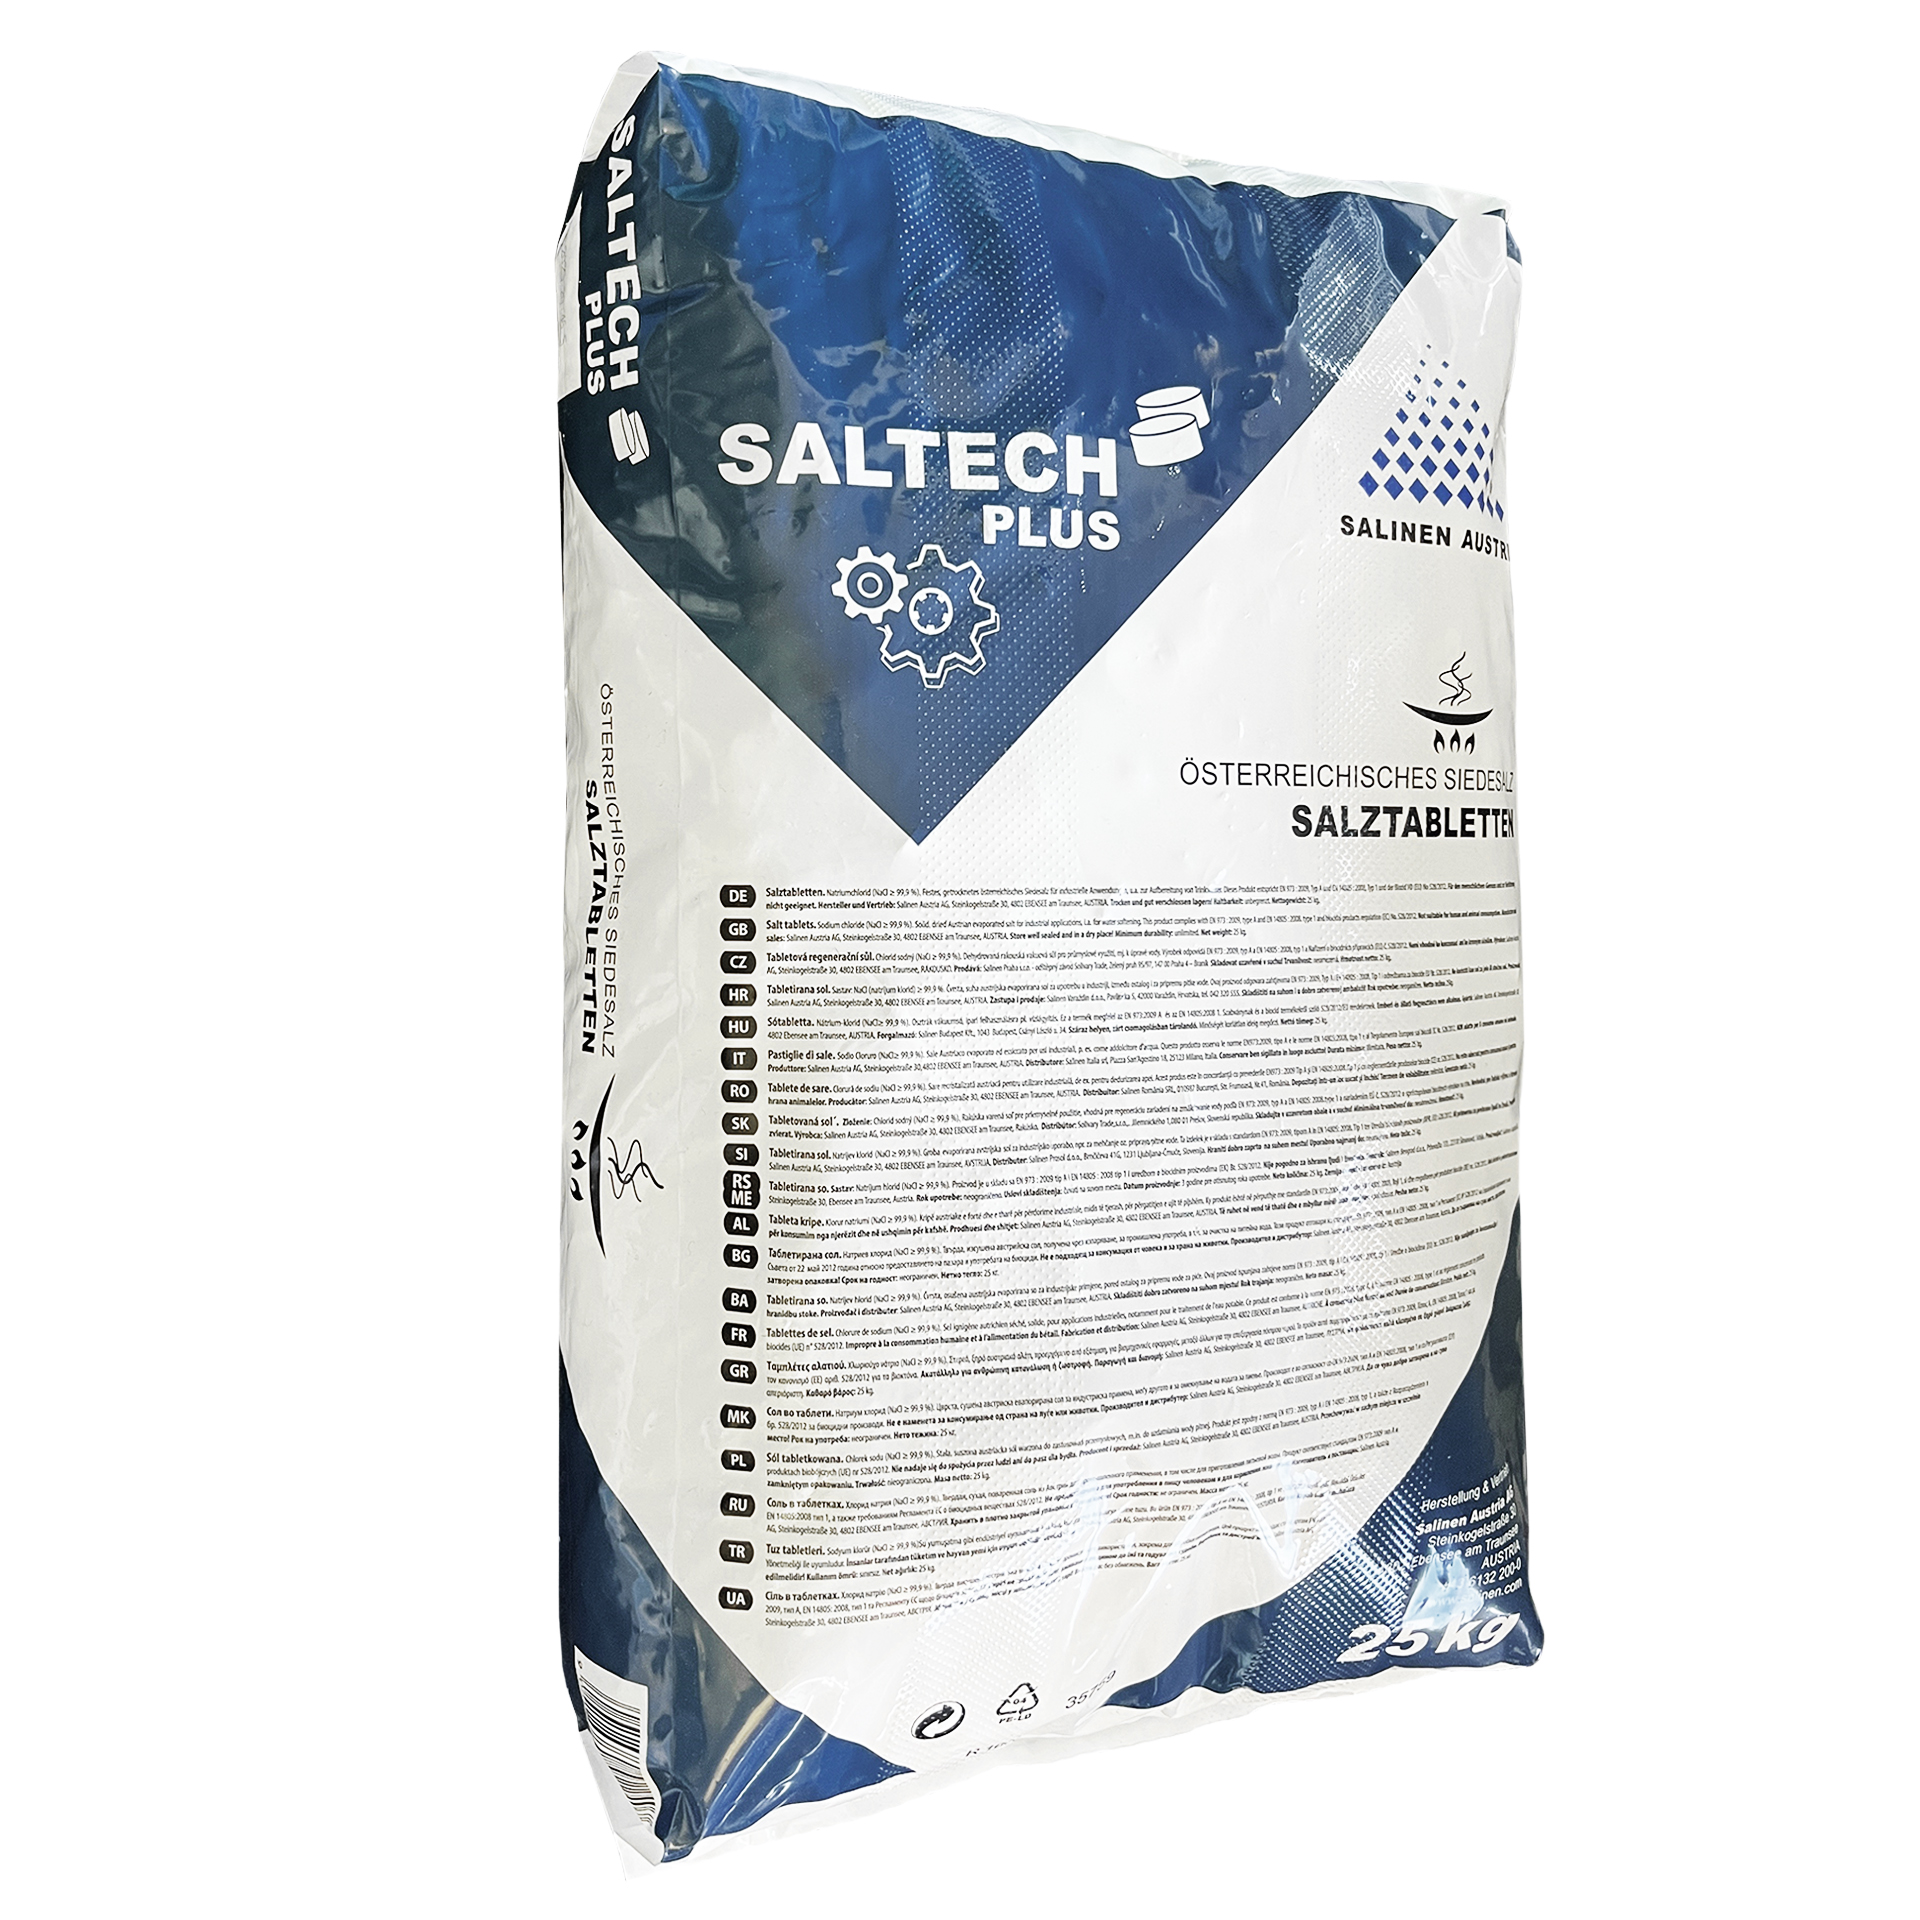 Saltech Plus 25 kg Salztabletten Regeneriersalz Siedesalz